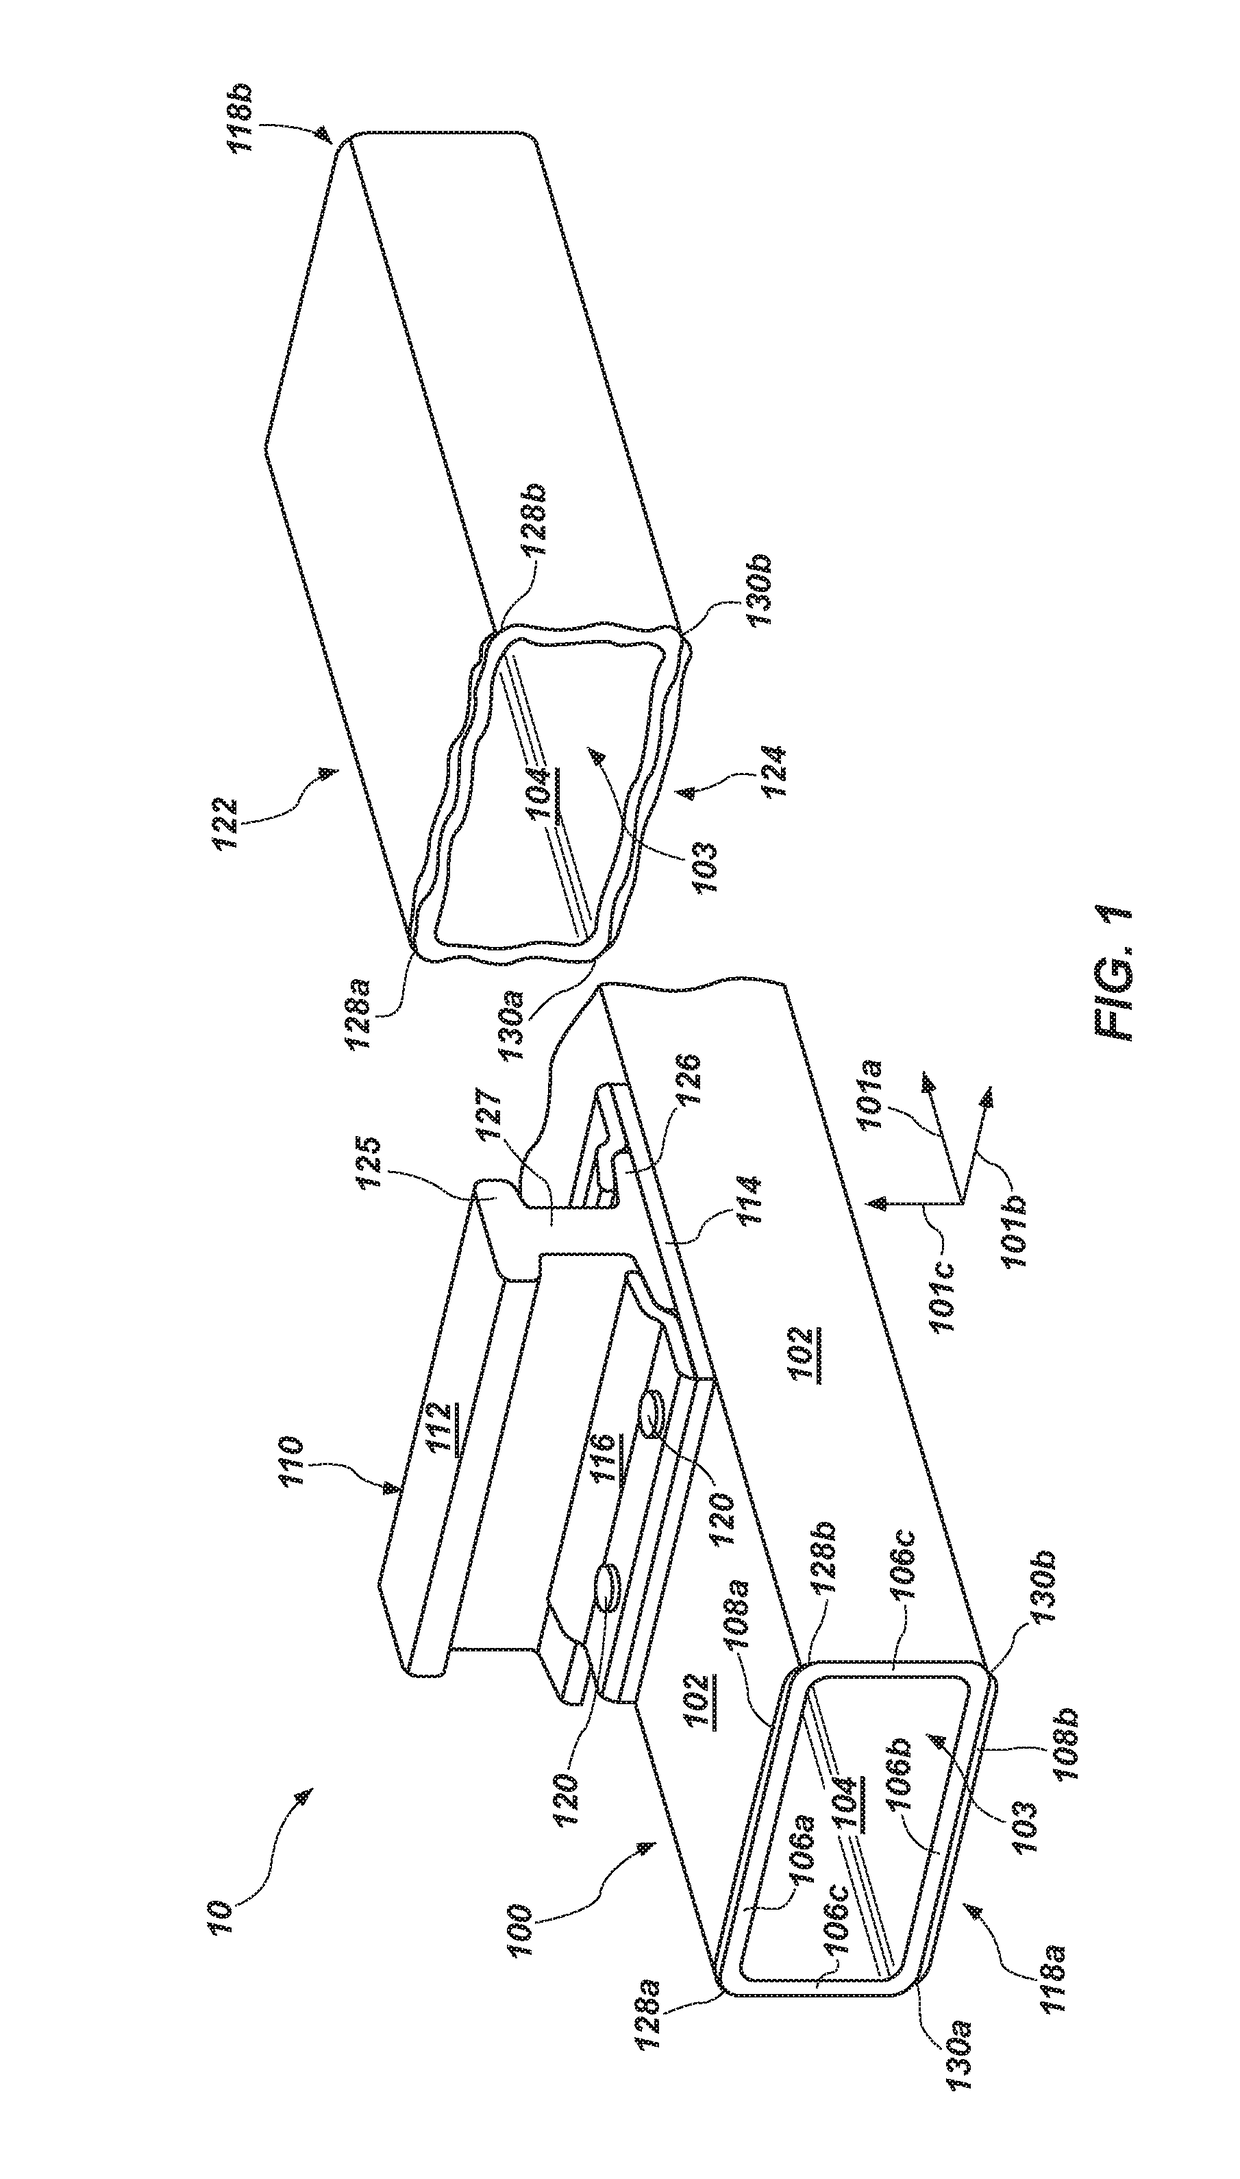 Composite rail tie apparatus and method